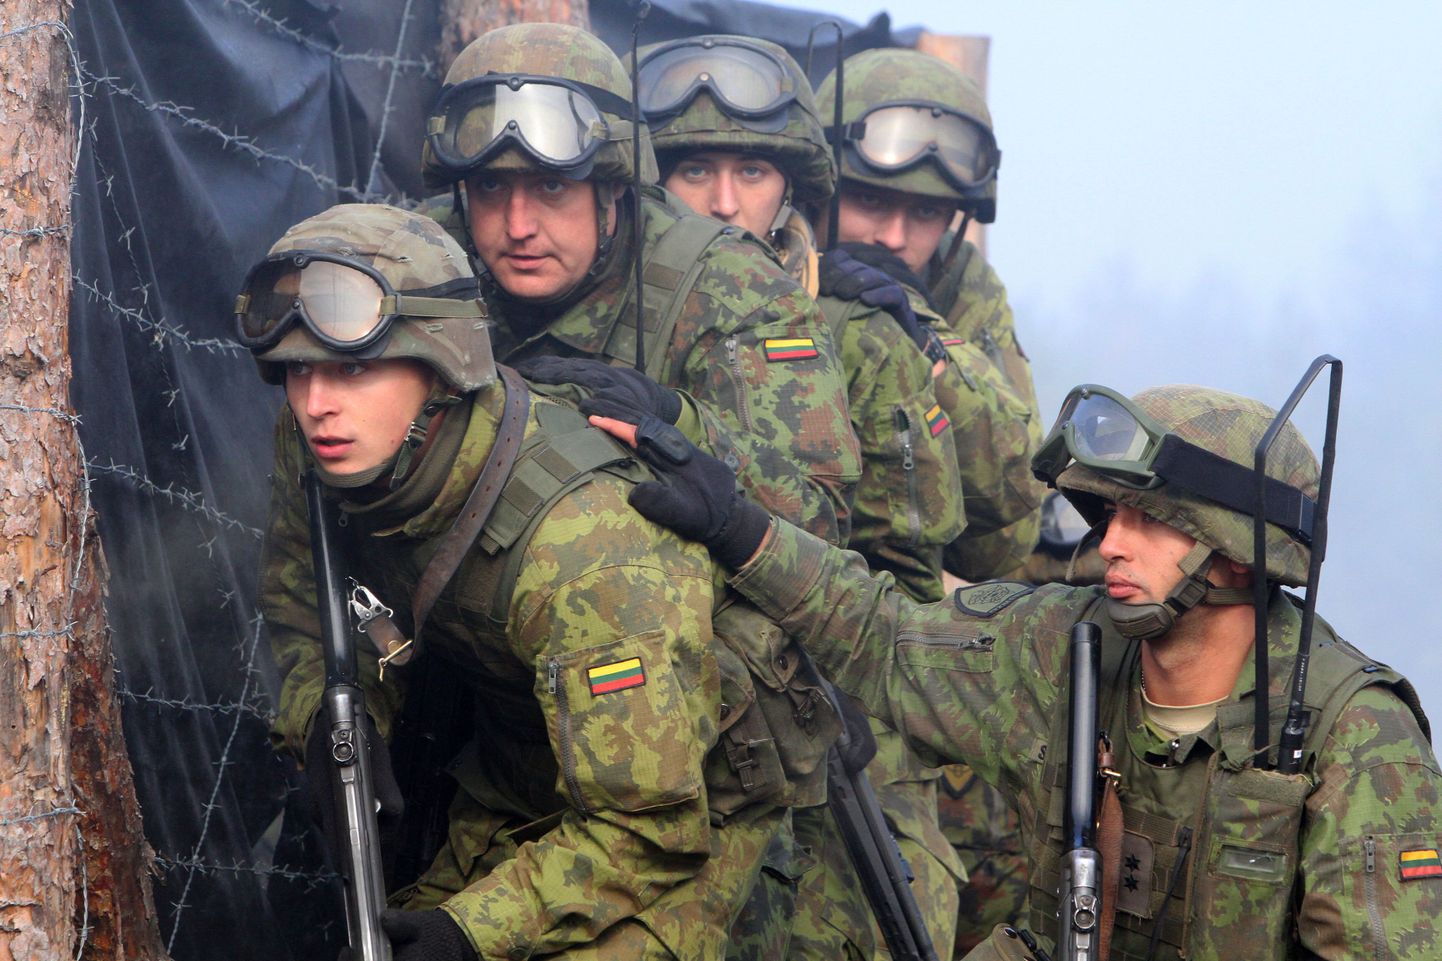 Leedu sõdurid ühisõppustel Poola ja Ukraina vägedega.